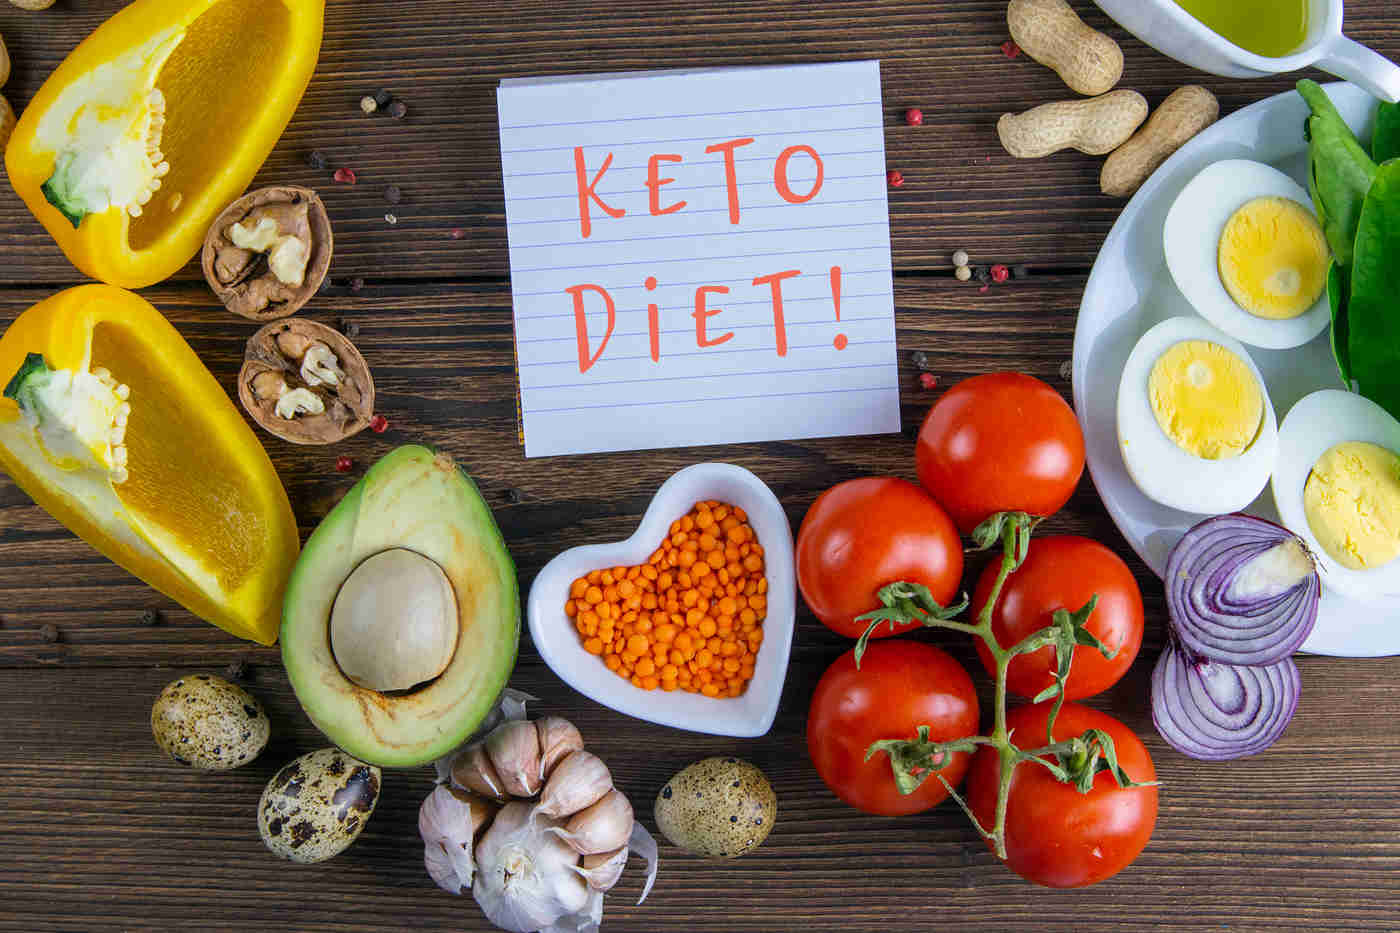 Dieta keto explicata in termeni simpli - Nutriblog